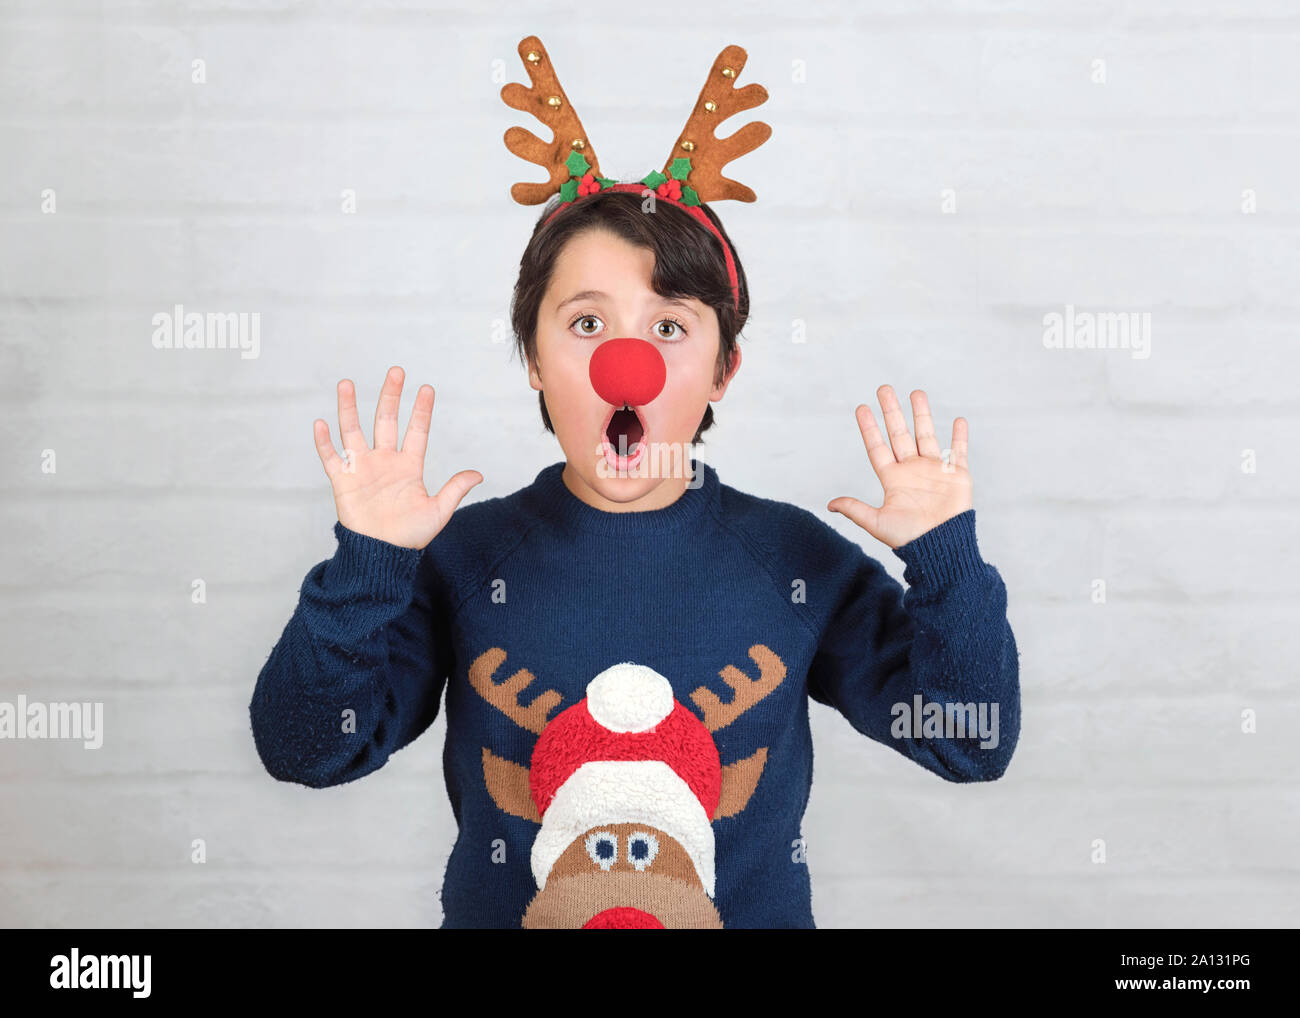 Joyeux Noël.enfant dans un costume de noël Renne Rudolph sur fond brique Banque D'Images